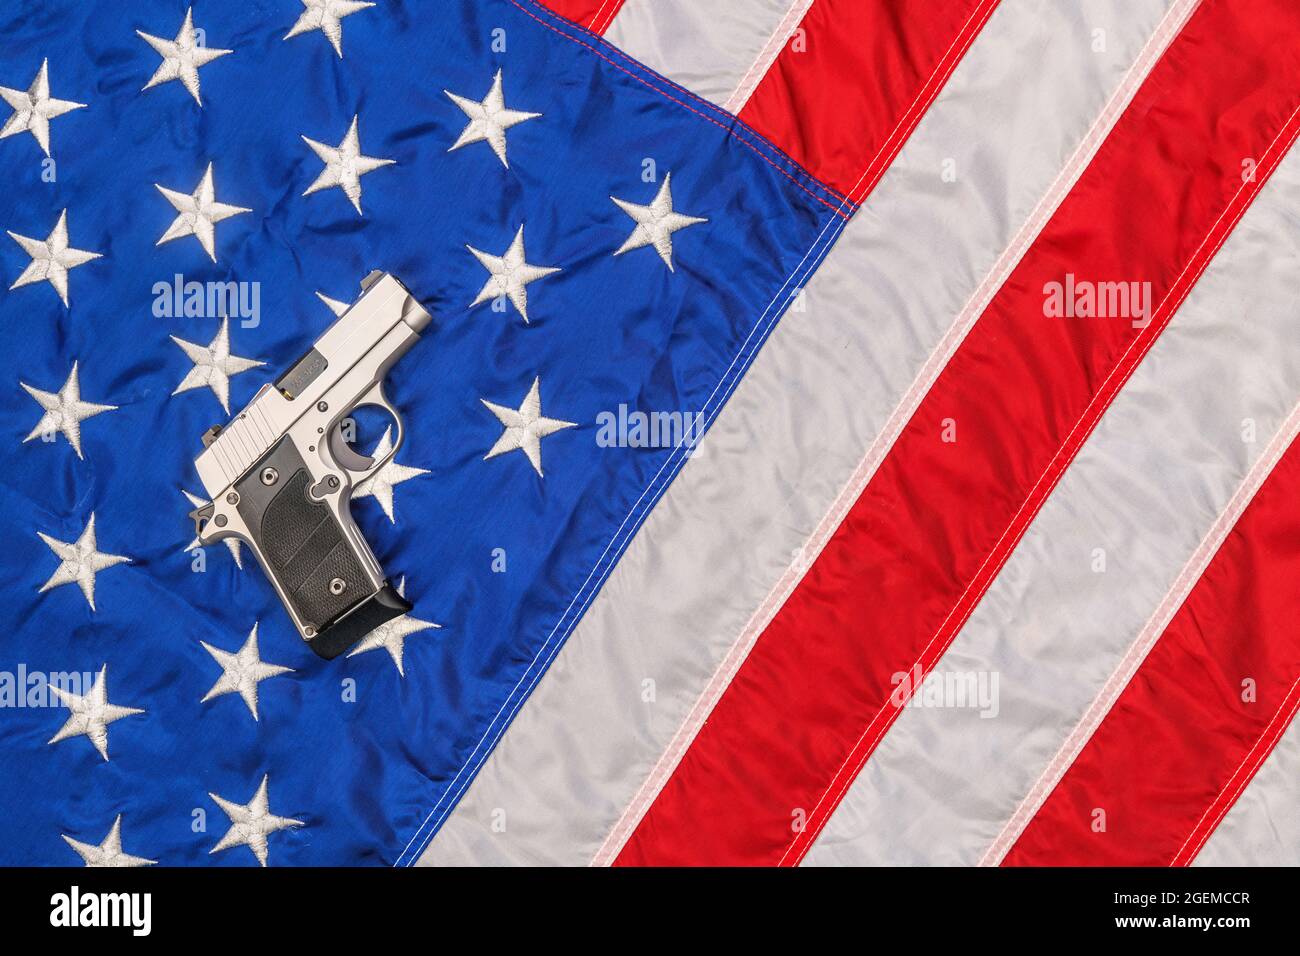 Auf einer amerikanischen Flagge steht eine Chrompistole, die die Freiheit und das Recht des zweiten Amendments symbolisiert, Waffen zu tragen. Stockfoto